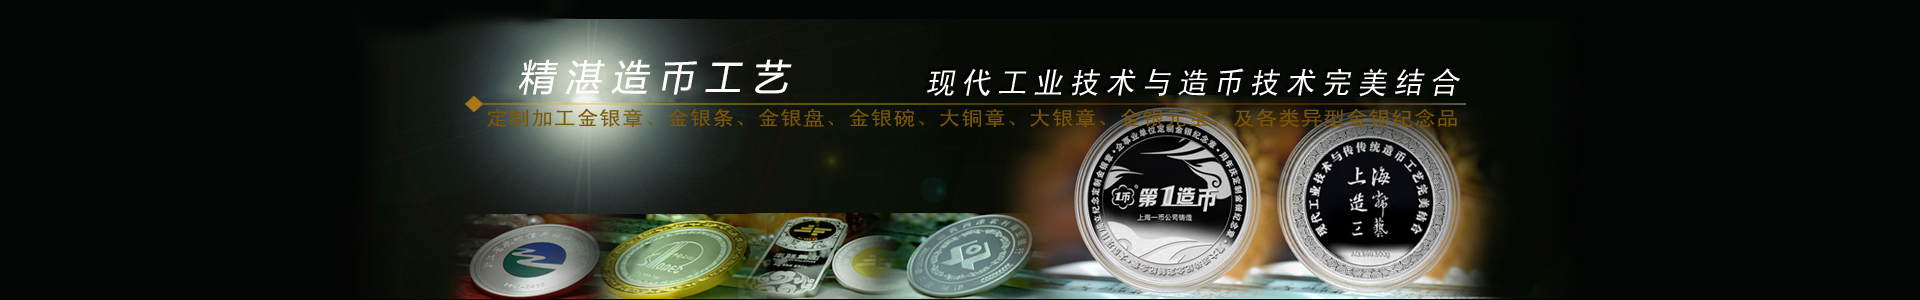 上海造币厂_上海造币厂官网_上海造币公司_上海造币